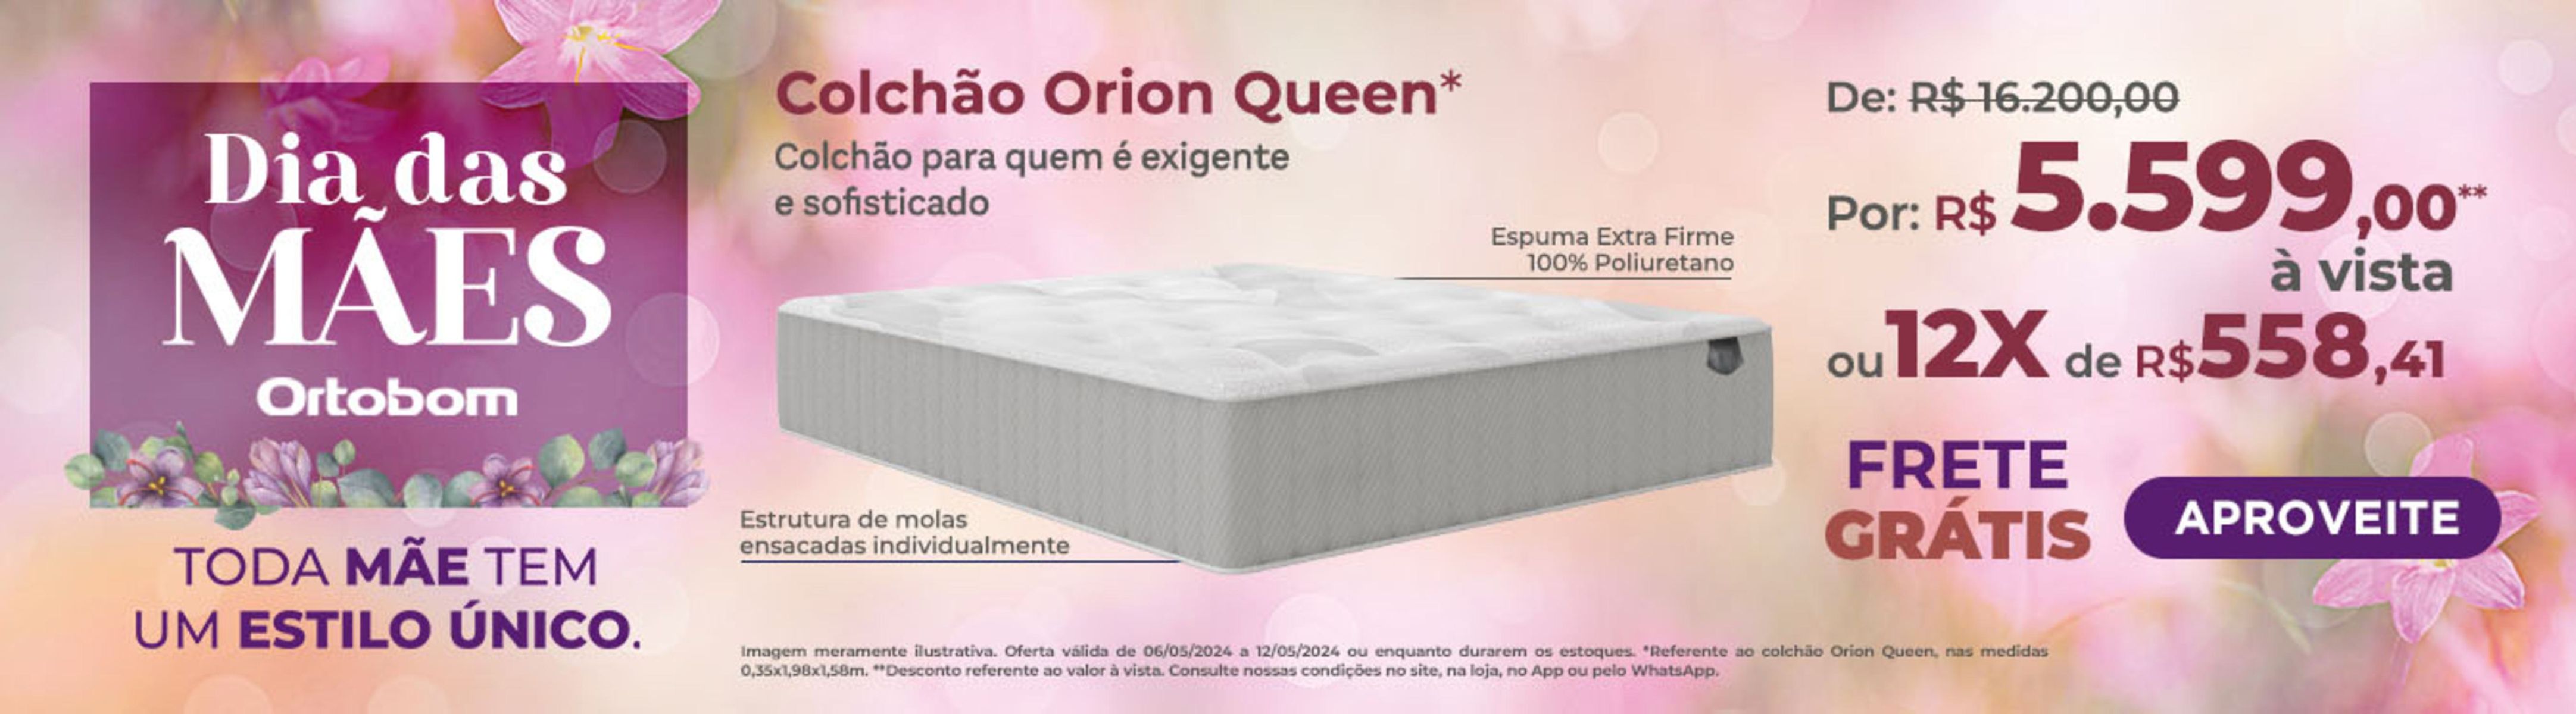 Promoção Colchão Orion Queen Ortobom